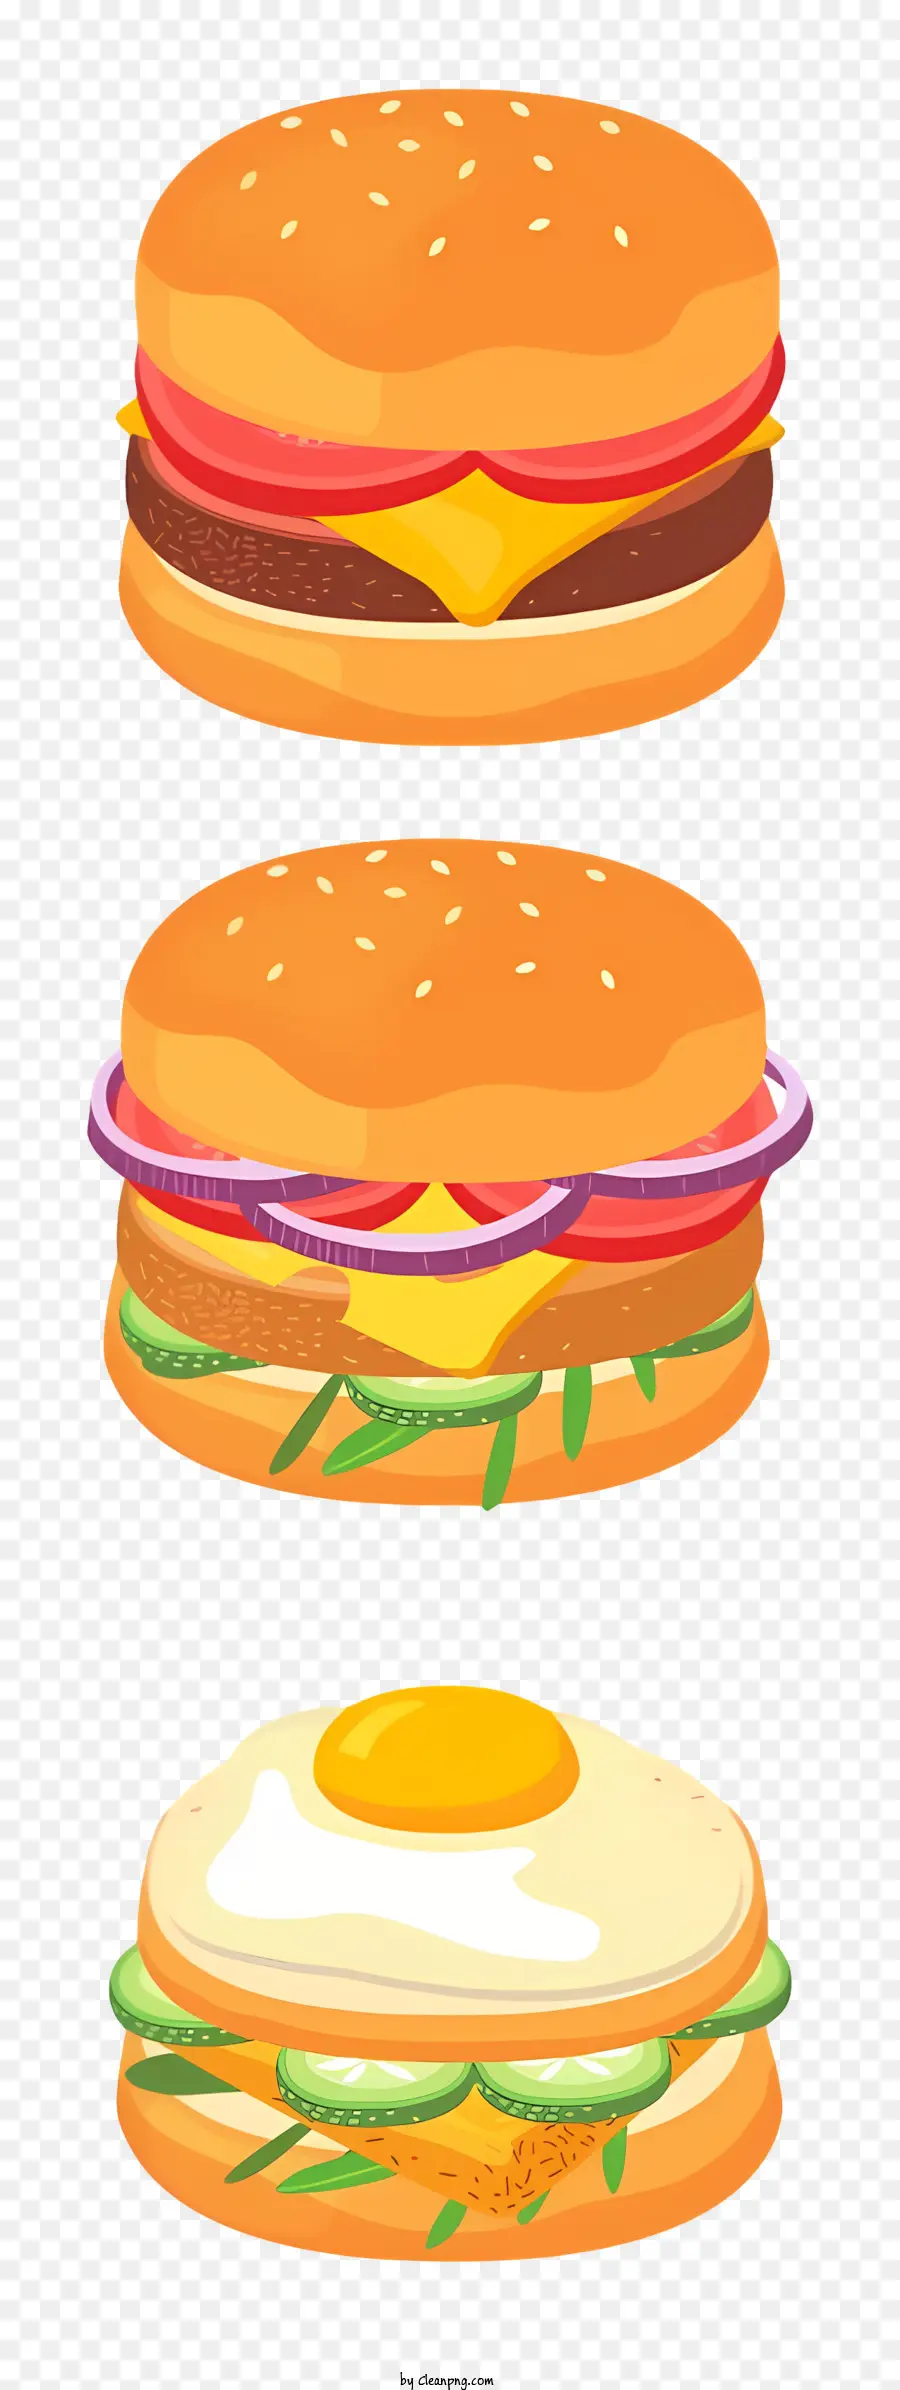 pomodoro - Illustrazione 3D di tre hamburger su un piatto